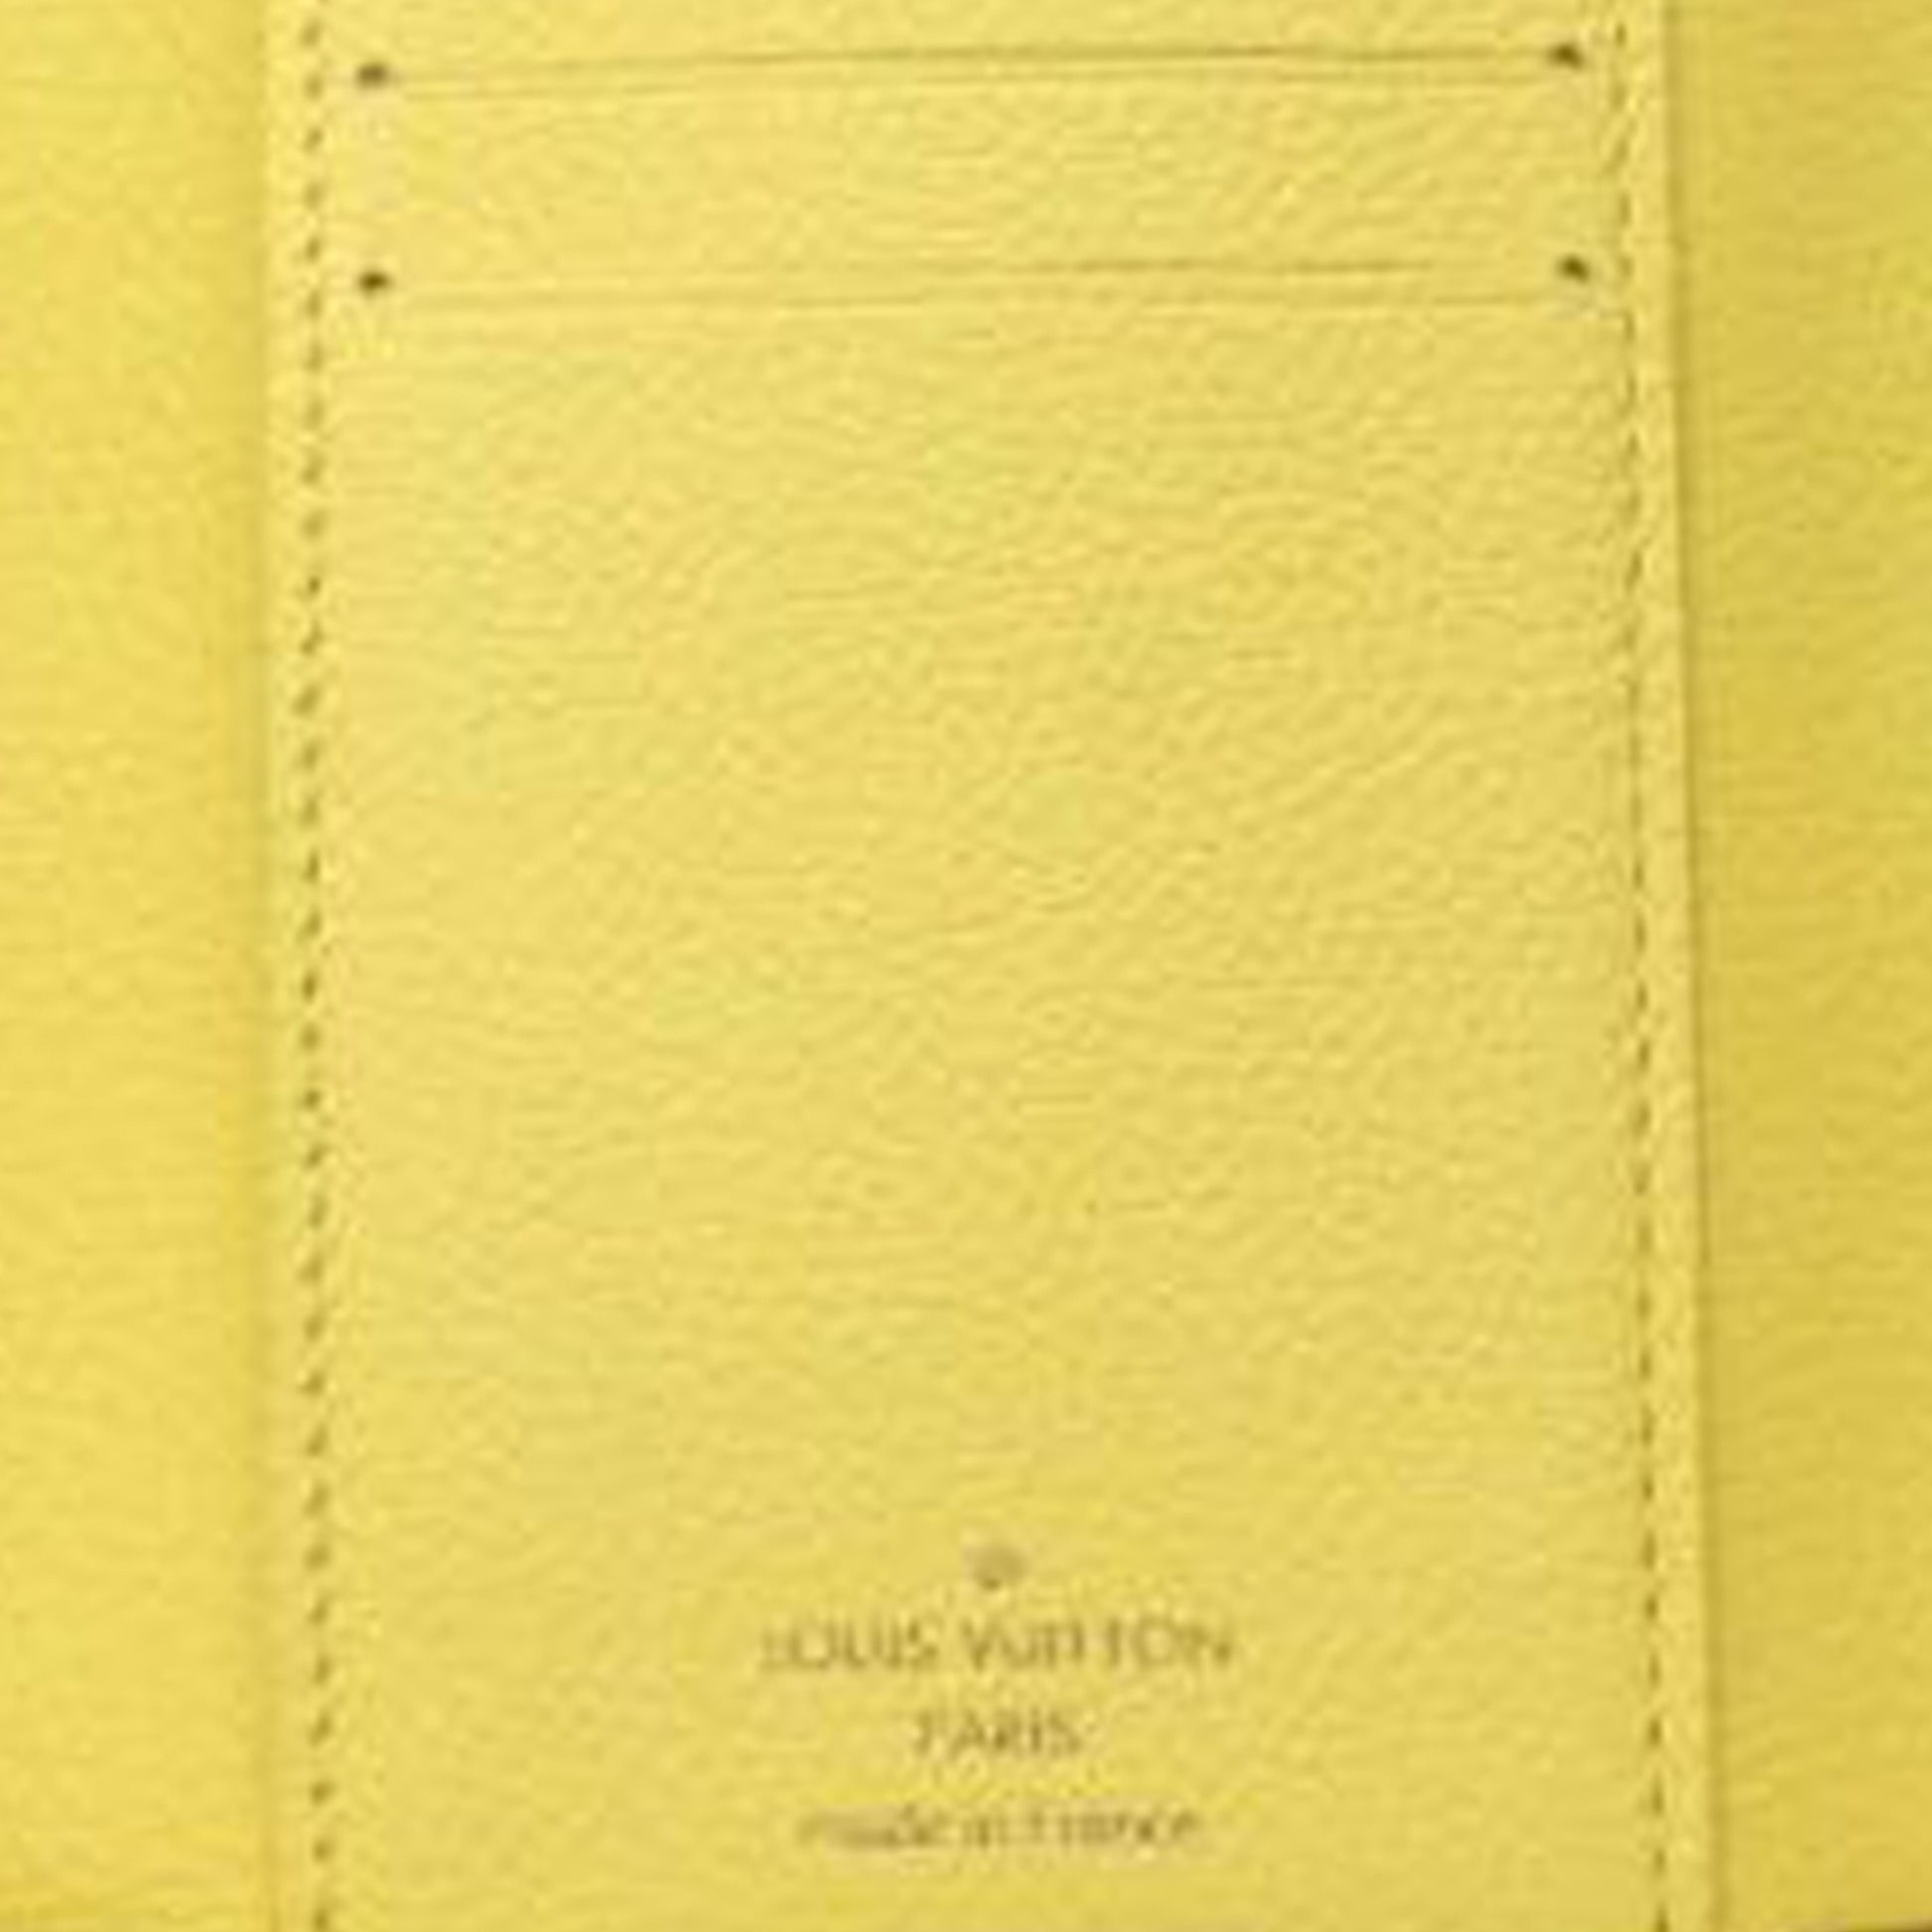 Yellow Louis Vuitton Monogram Empreinte Victorine Wallet